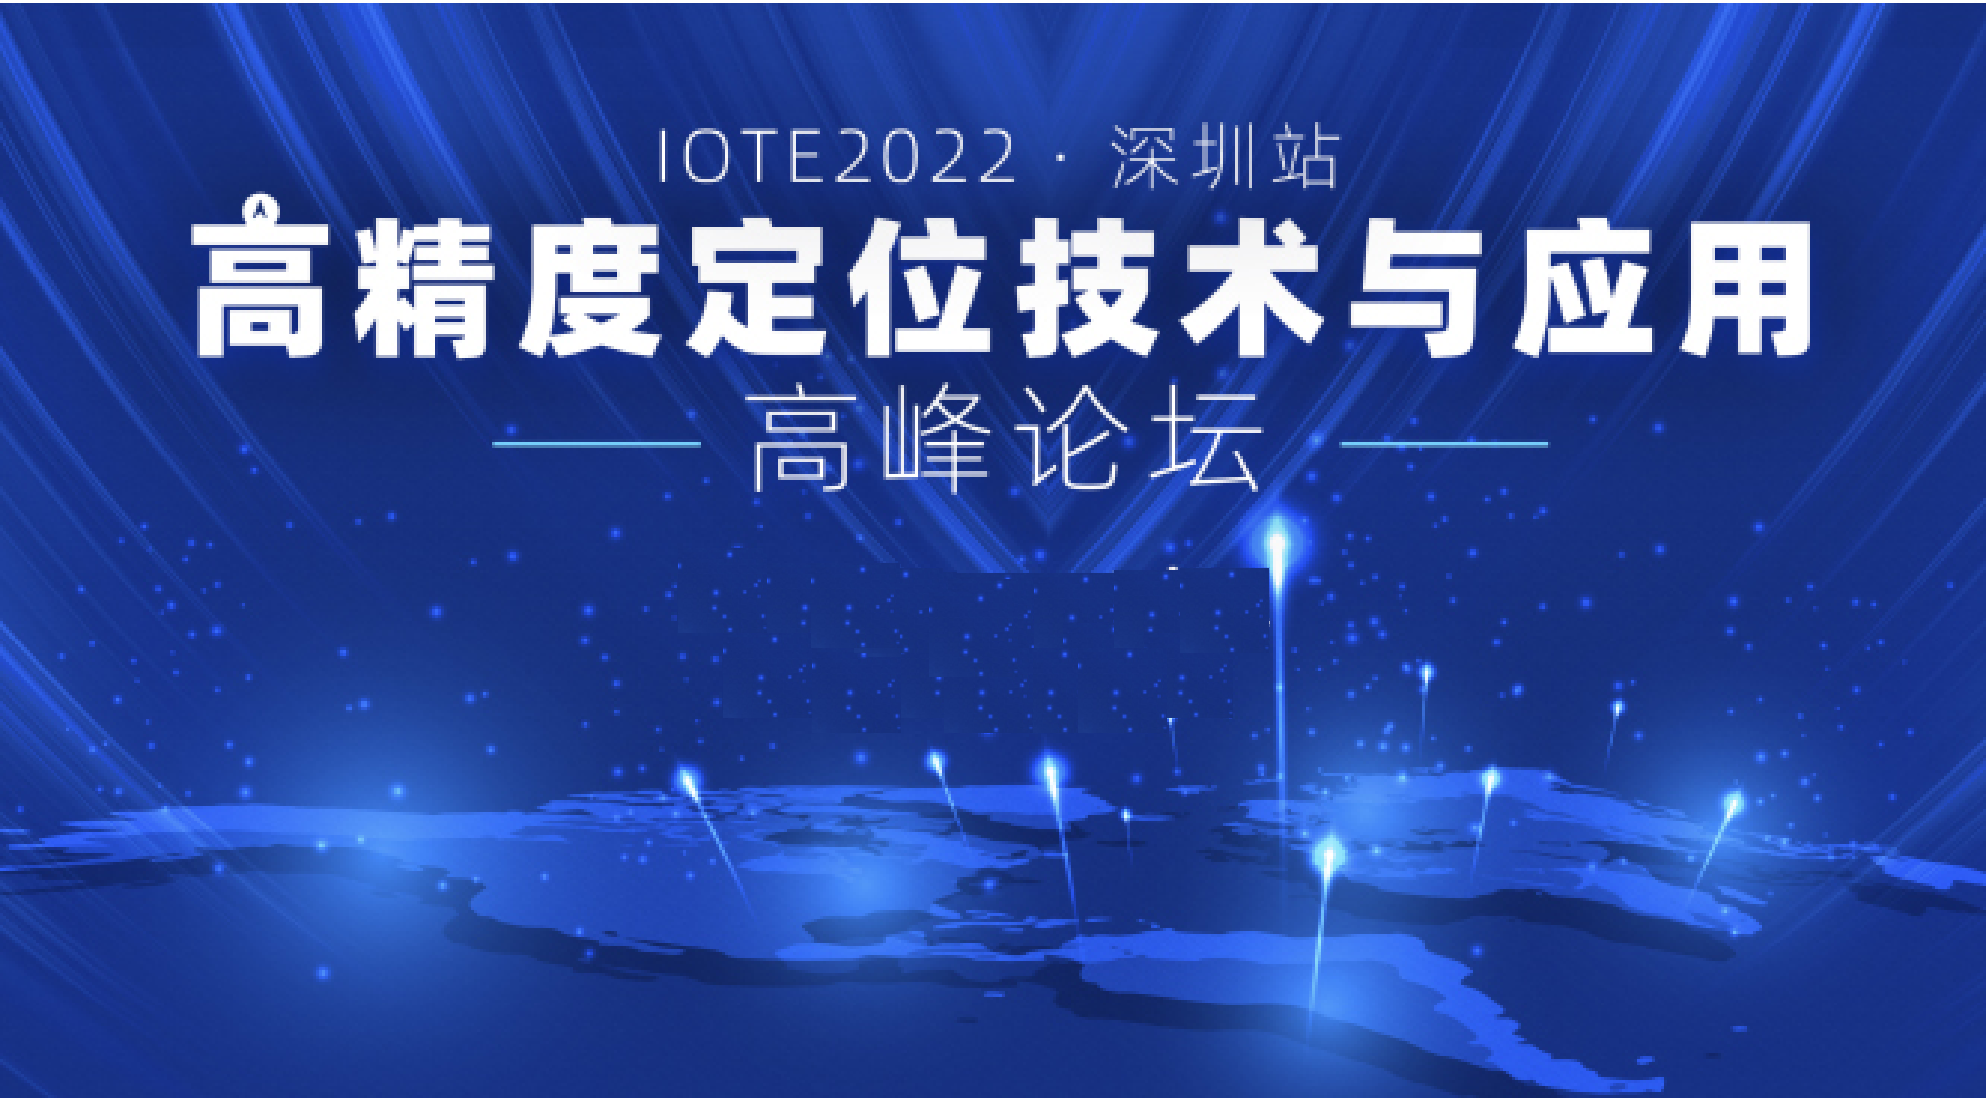 IOTE2022深圳·高精度定位技术与应用高峰论坛